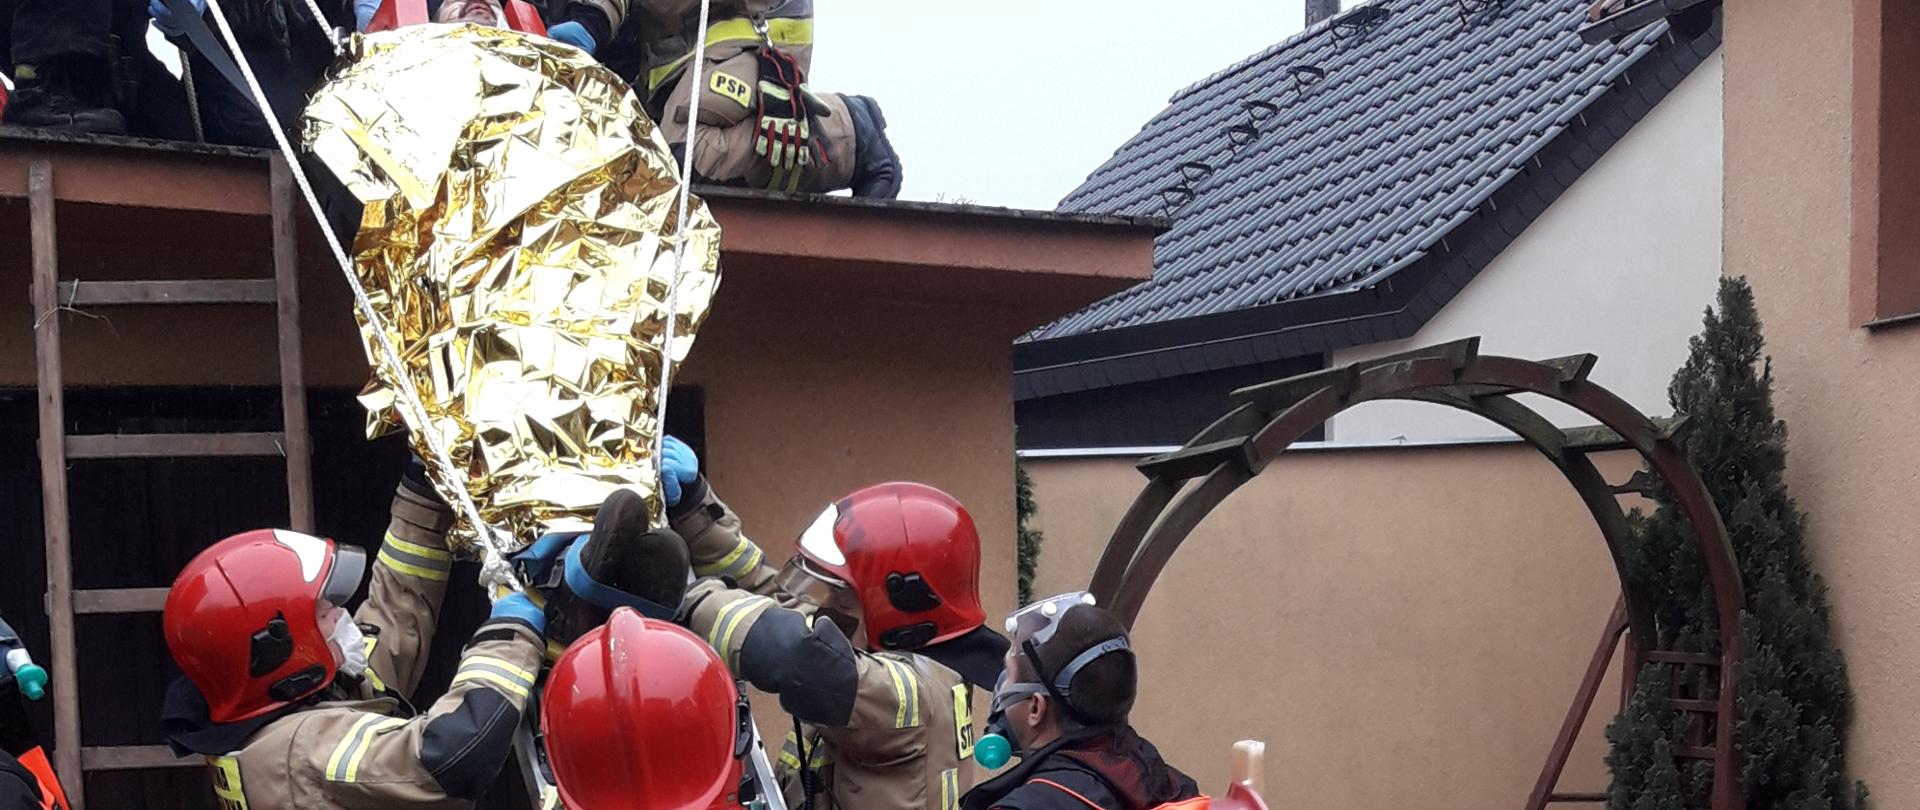 Ewakuacja poszkodowanego z dachu przy użyciu opartej o budynek drabiny. Po drabinie strażacy wraz z ratownikami medycznymi zsuwają nosze, zabezpieczając je liną.